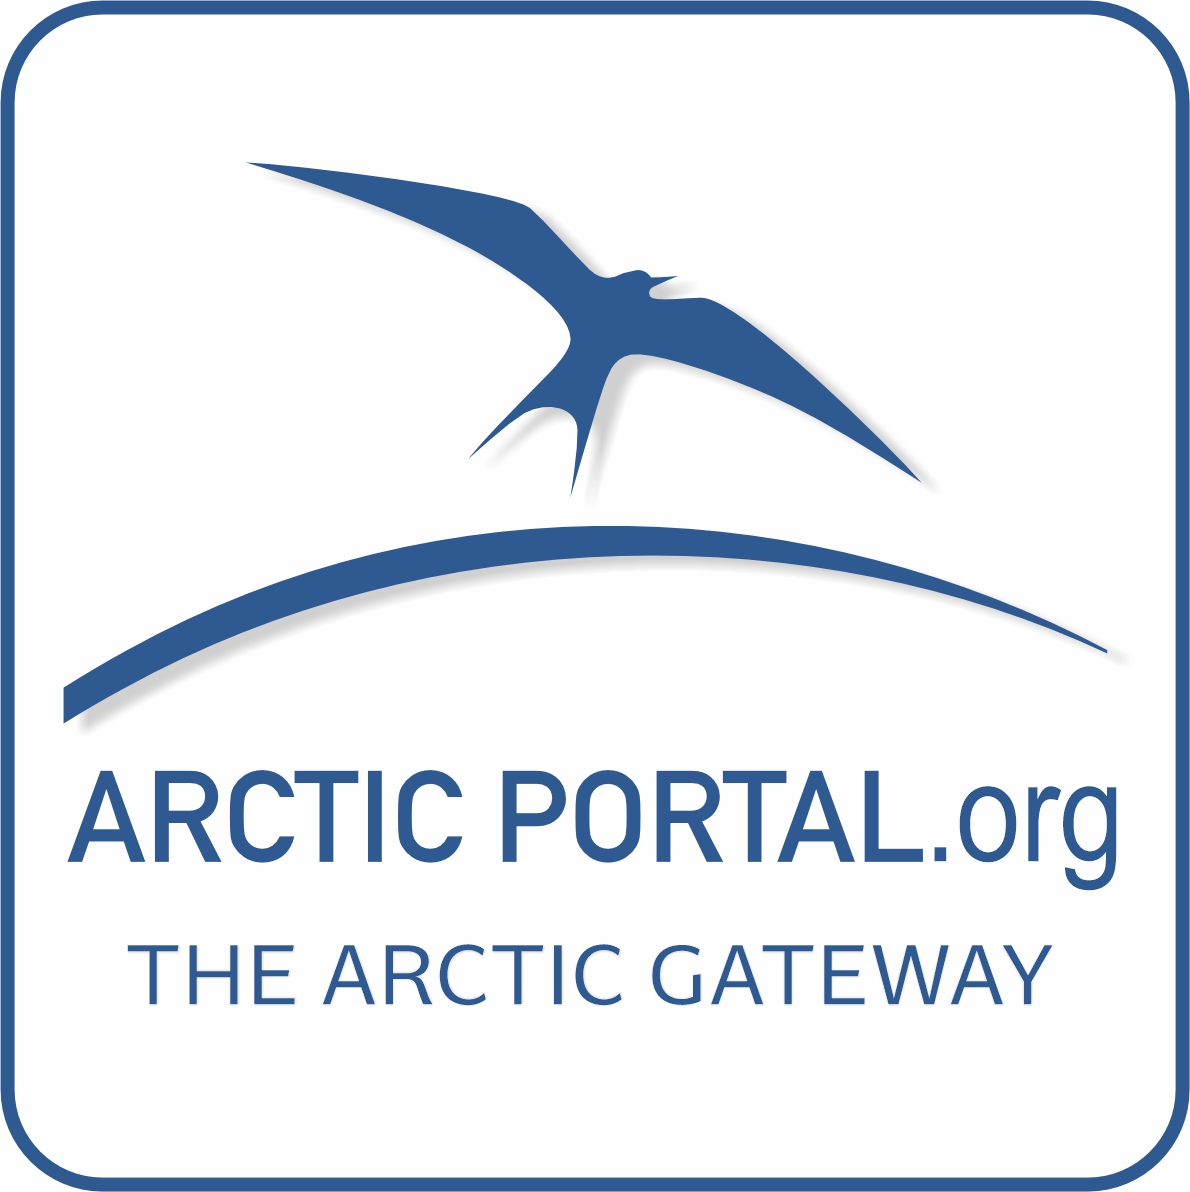 Arctic Portal logo blue